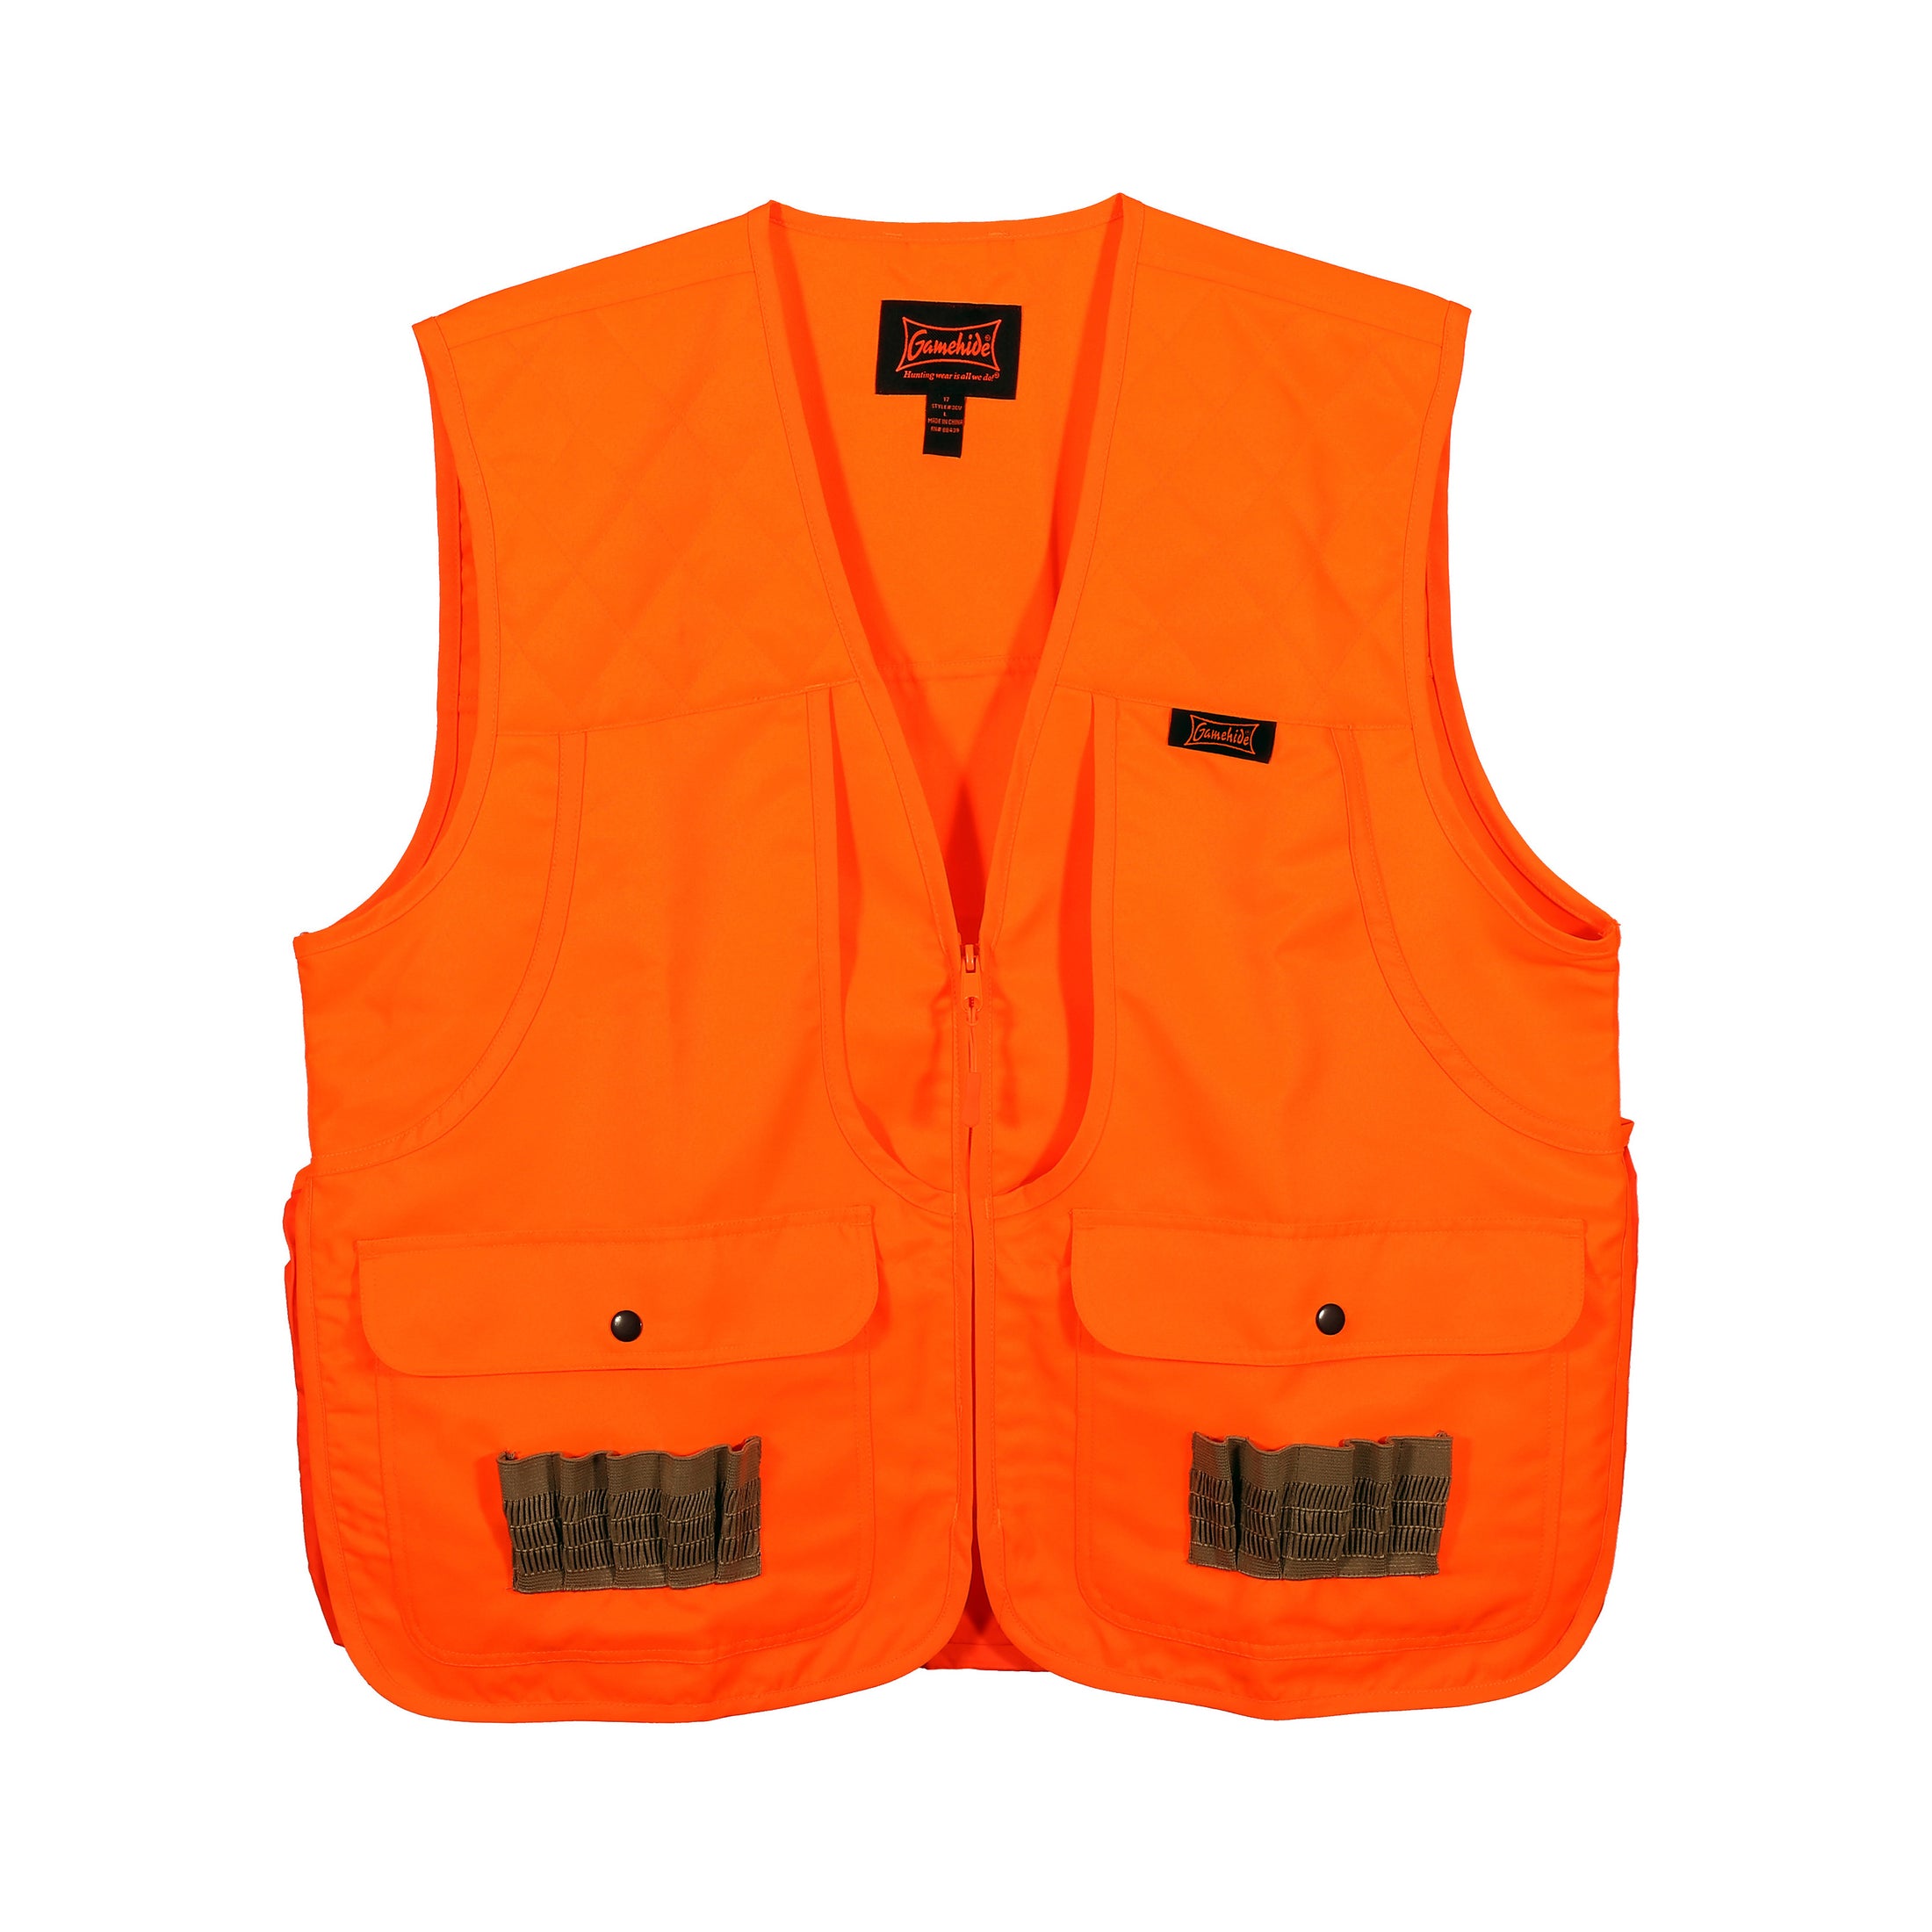 gamehide youth front loader vest front view (blaze orange)